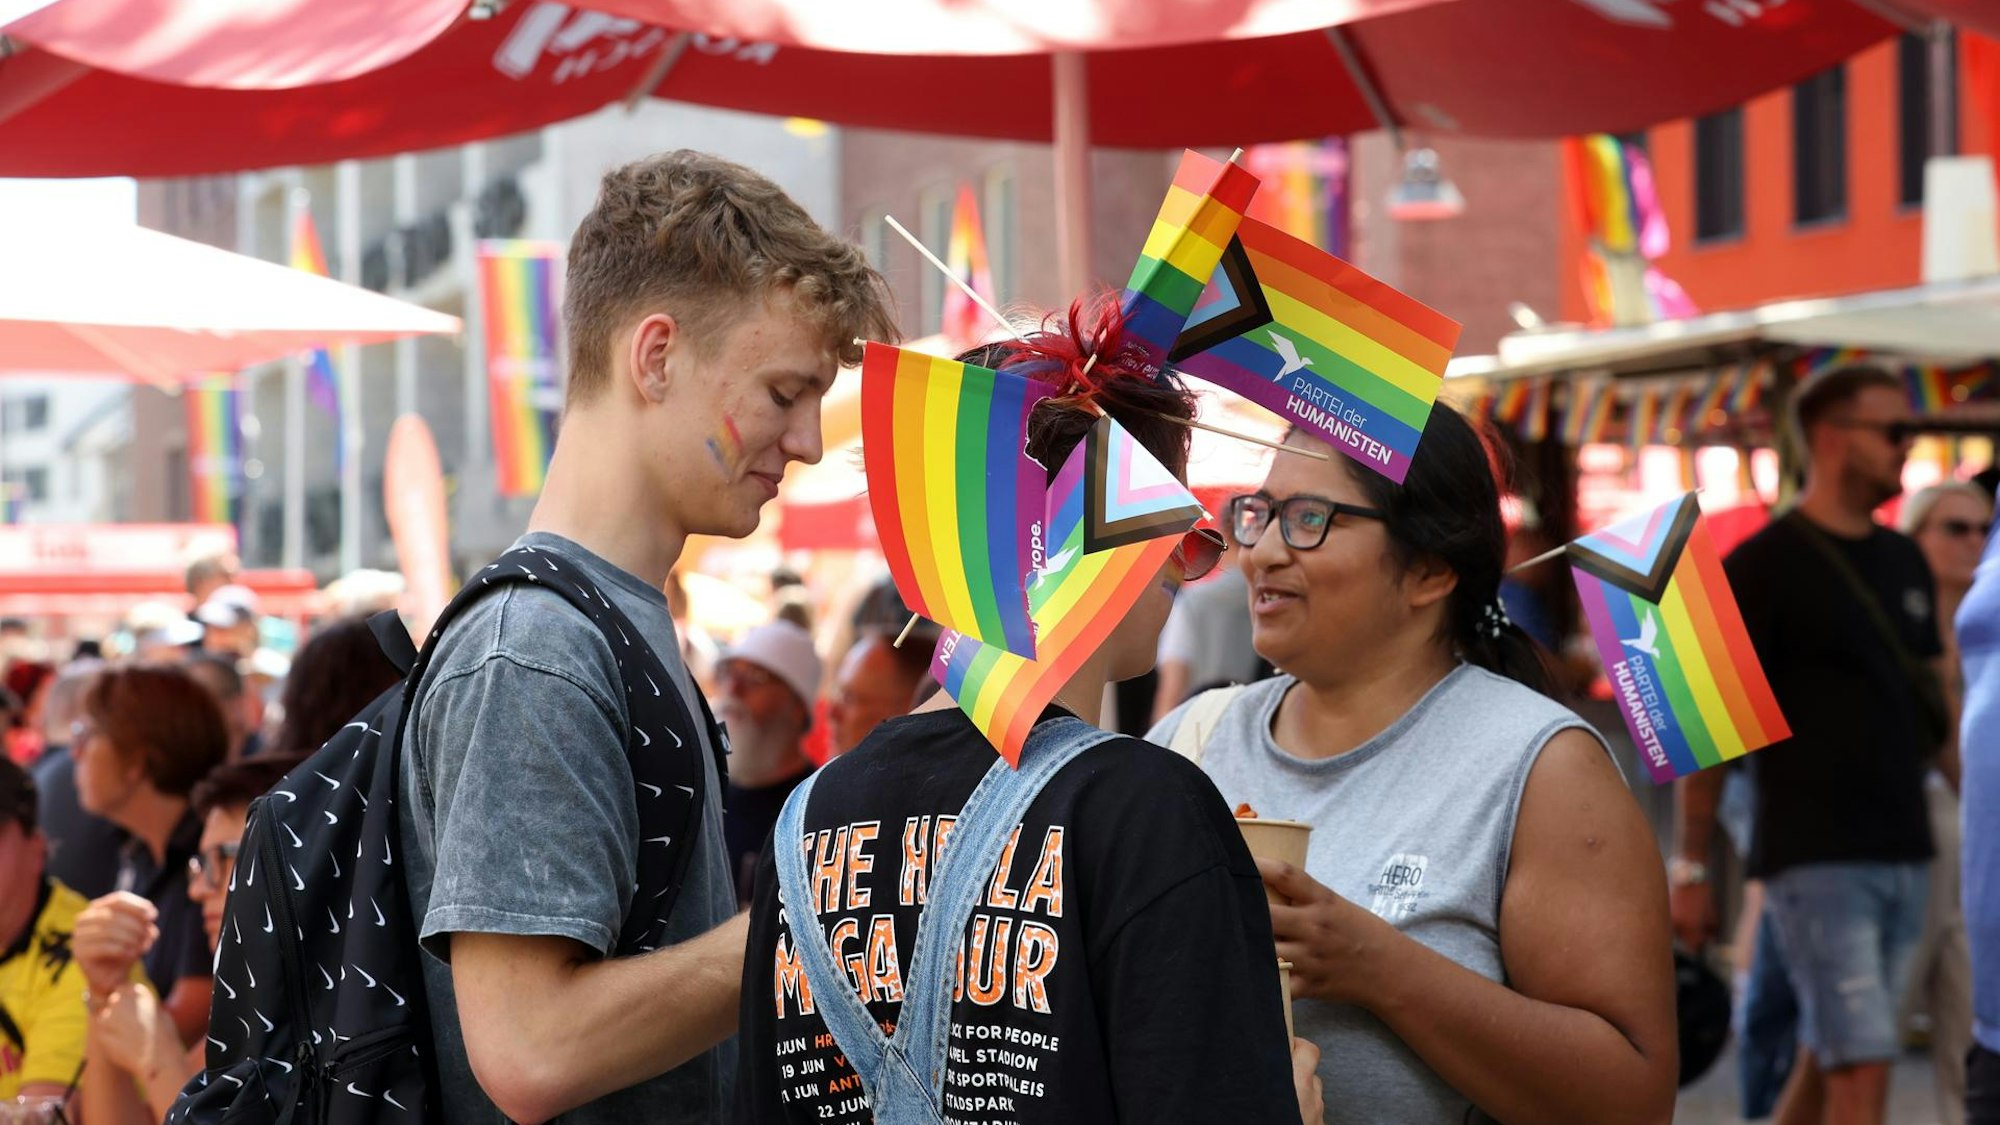 Menschen unterhalten sich beim ColognePride. Sie haben Pride-Flaggen im Haar.